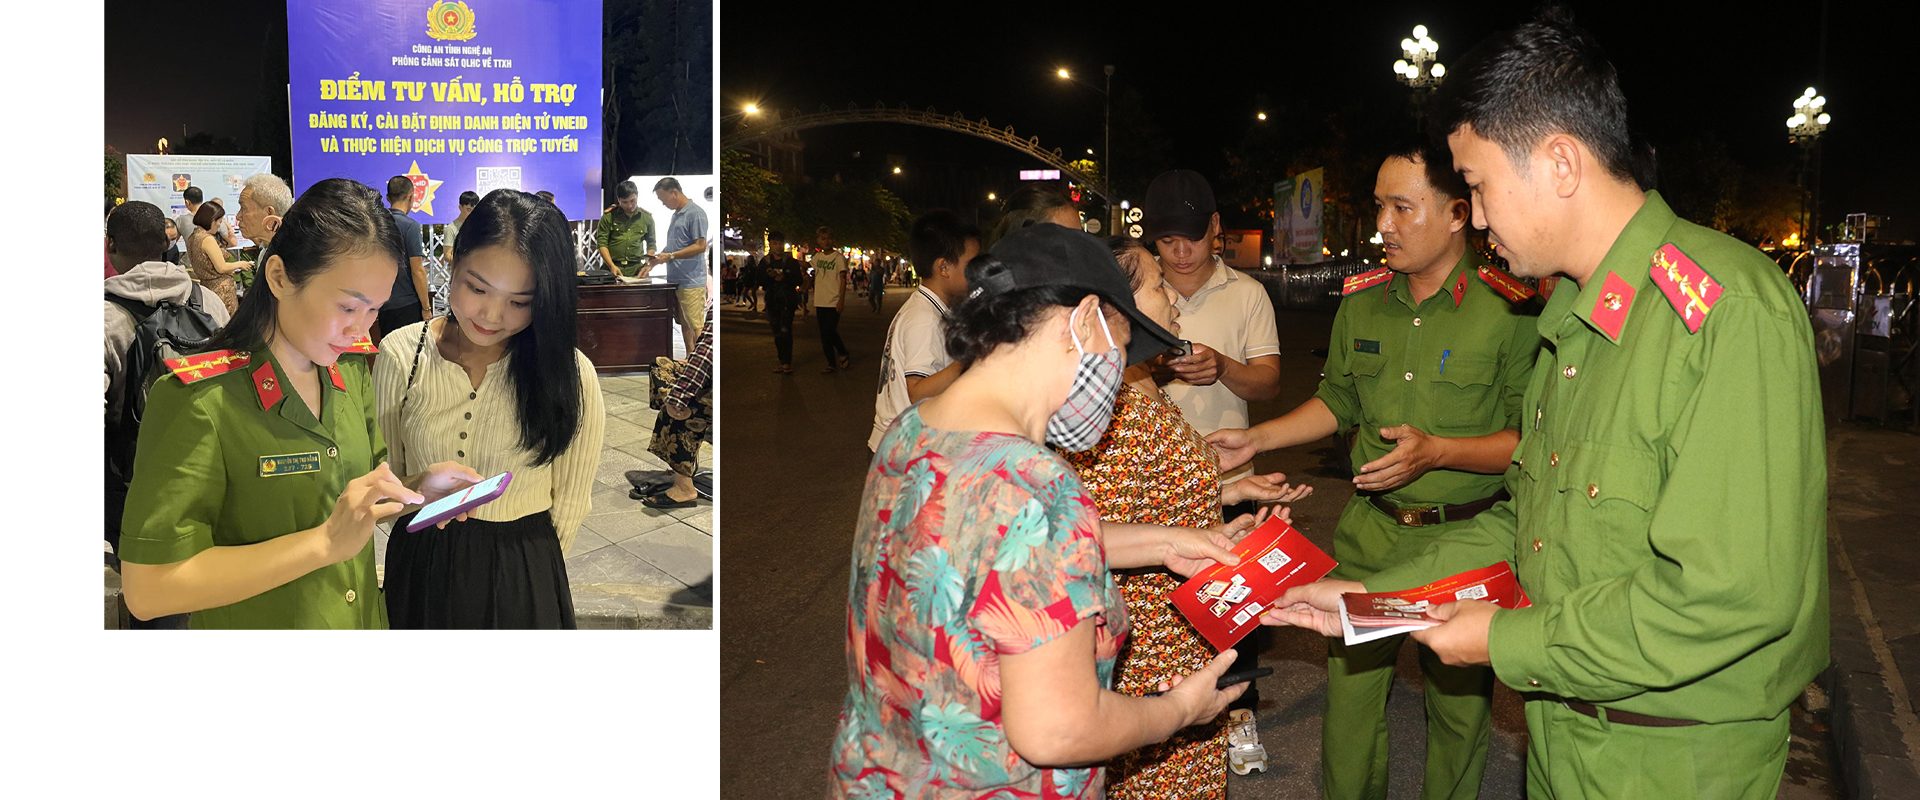 Công an tỉnh Nghệ An tổ chức điểm tư vấn, hỗ trợ đăng ký, cài đặt định danh điện tử (VNEID) và hướng dẫn dịch vụ công trực tuyến trên phố đi bộ thành phố Vinh. Ảnh: PV